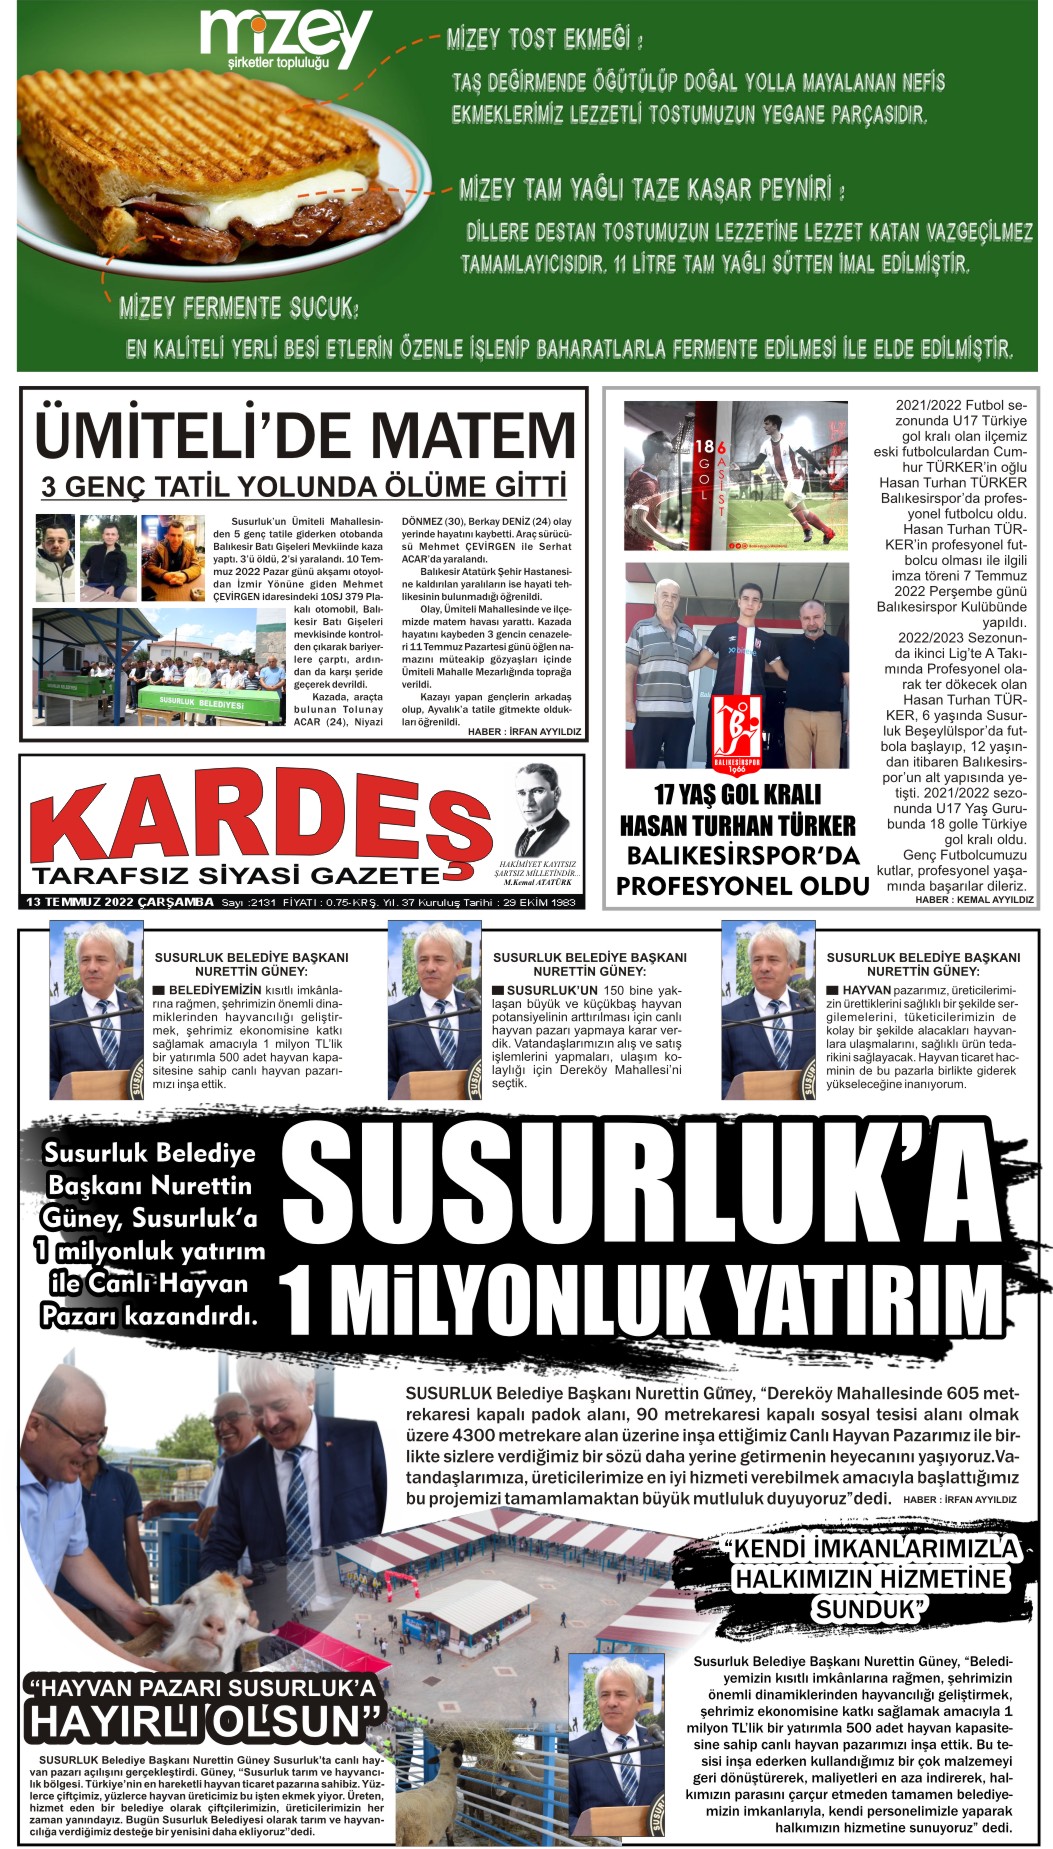 13.07.2022 Tarihli Kardeş Gazetesi